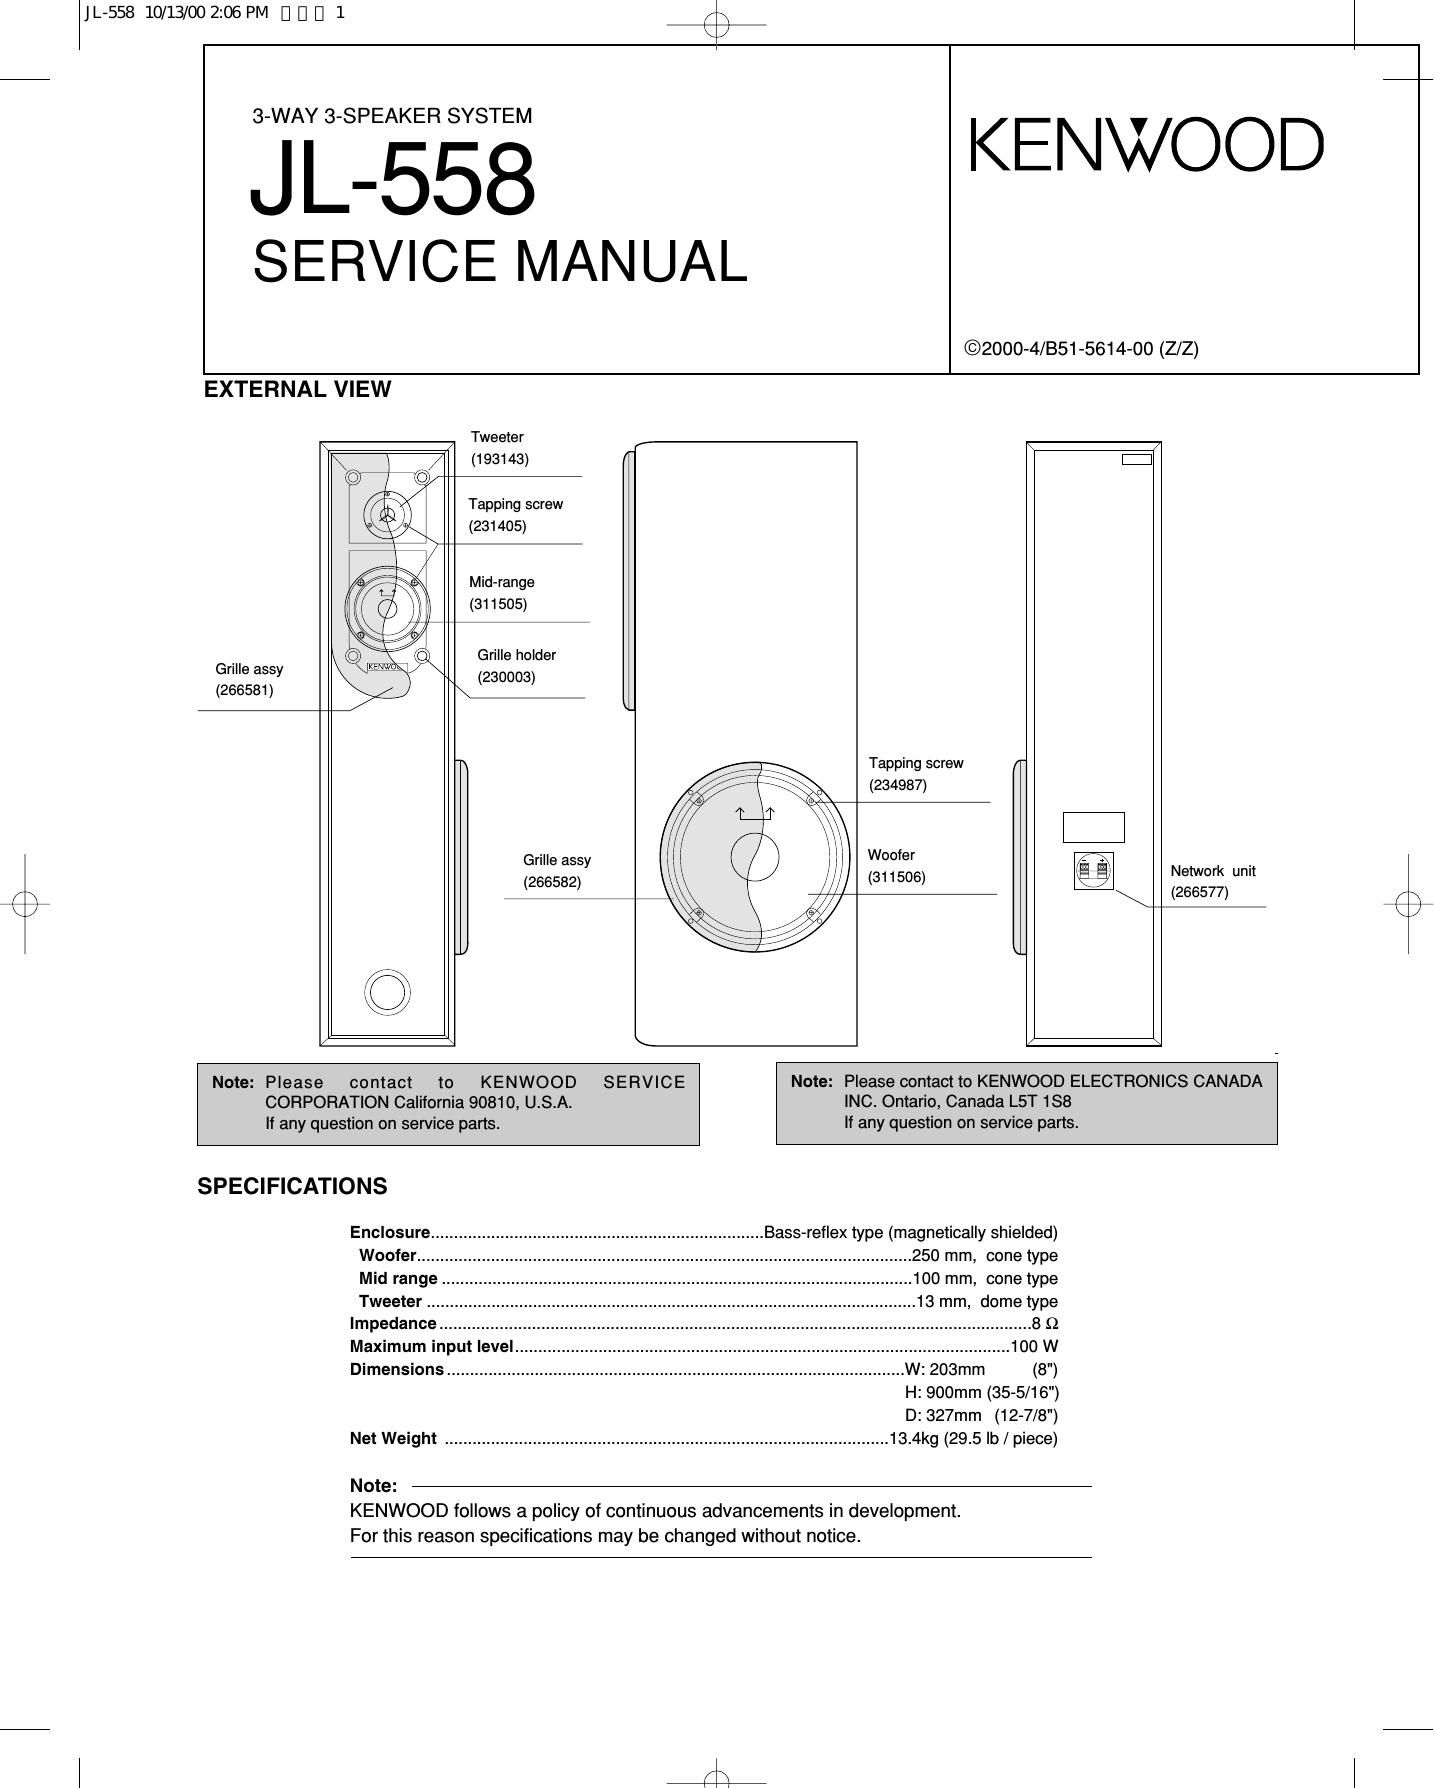 Kenwood JL 558 Service Manual